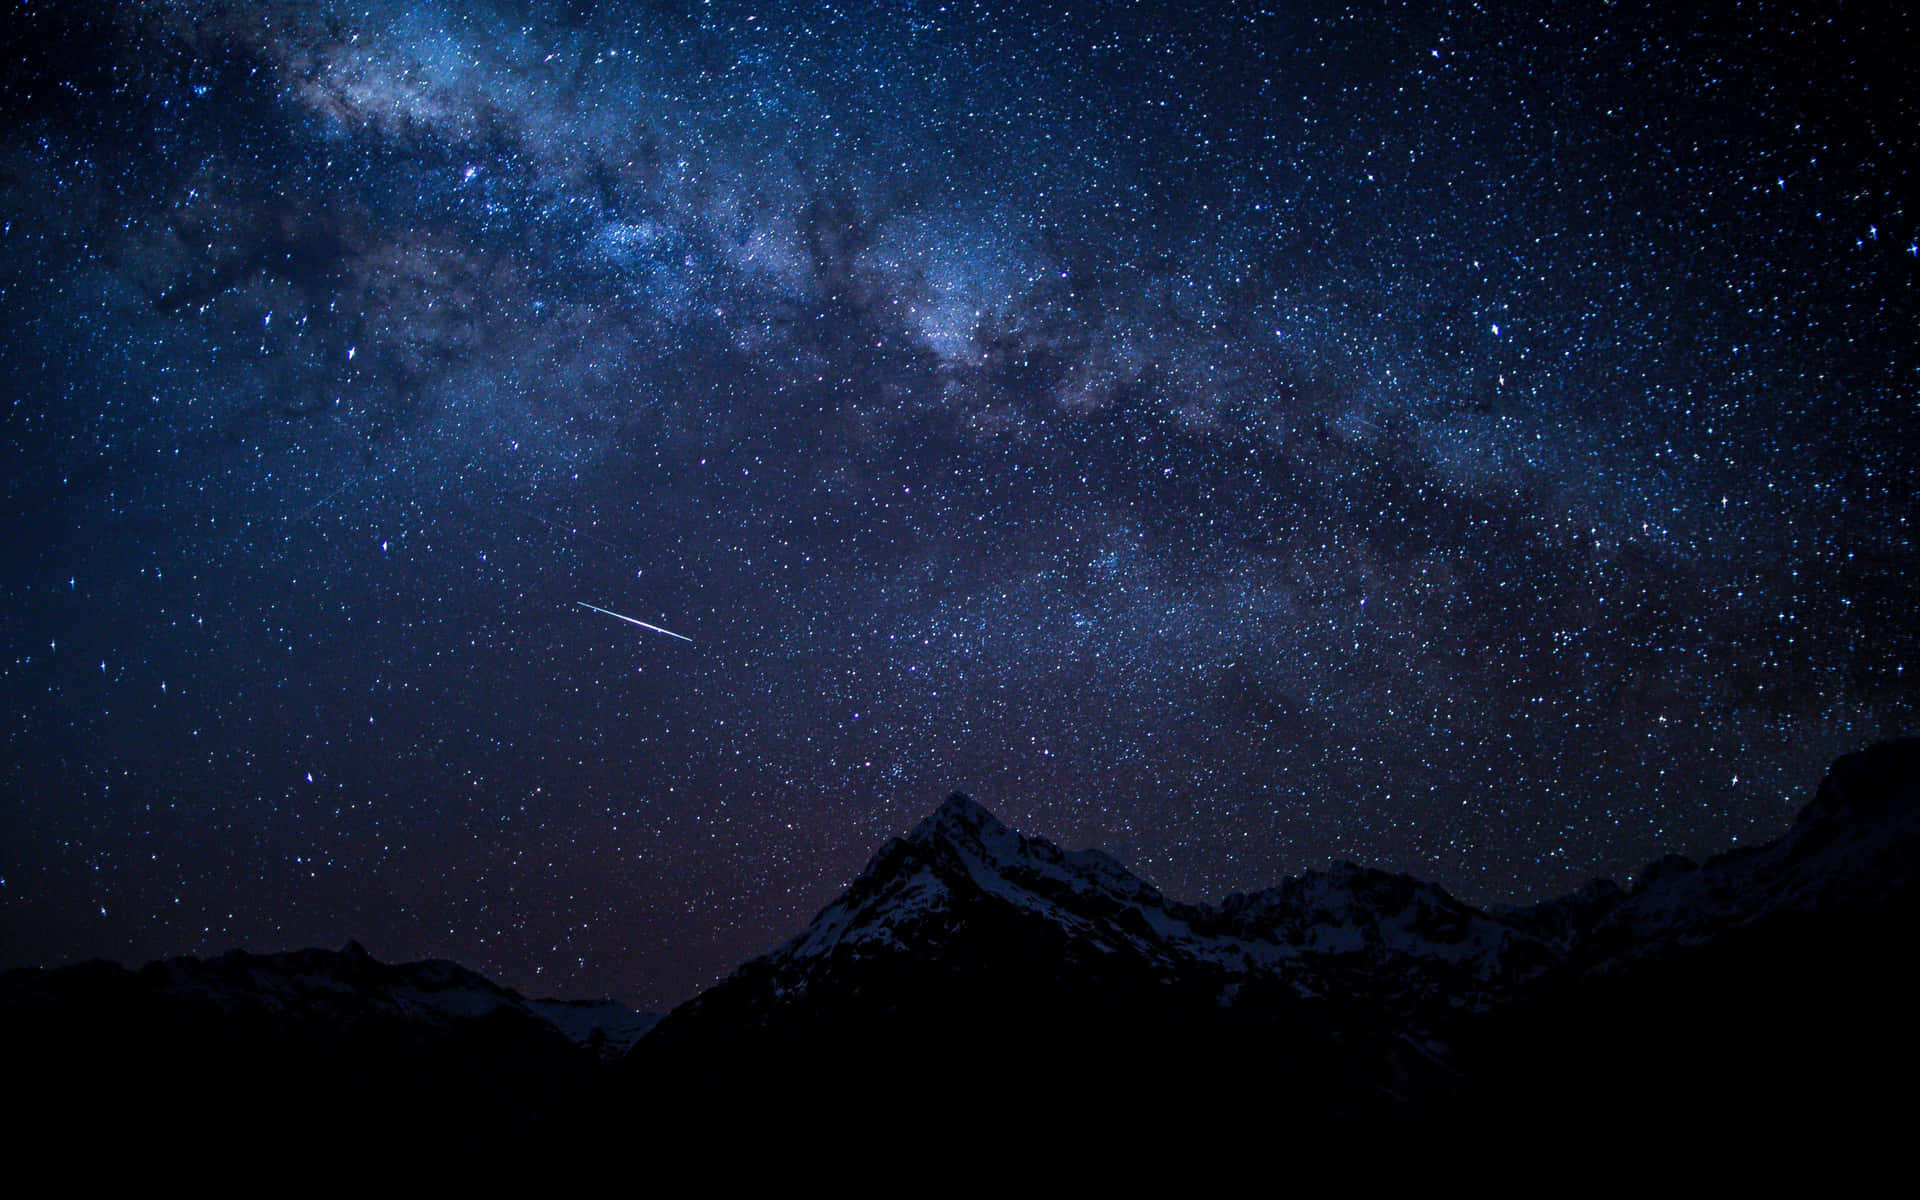 Impresionantepaisaje Nocturno De La Galaxia Estrellada. Fondo de pantalla